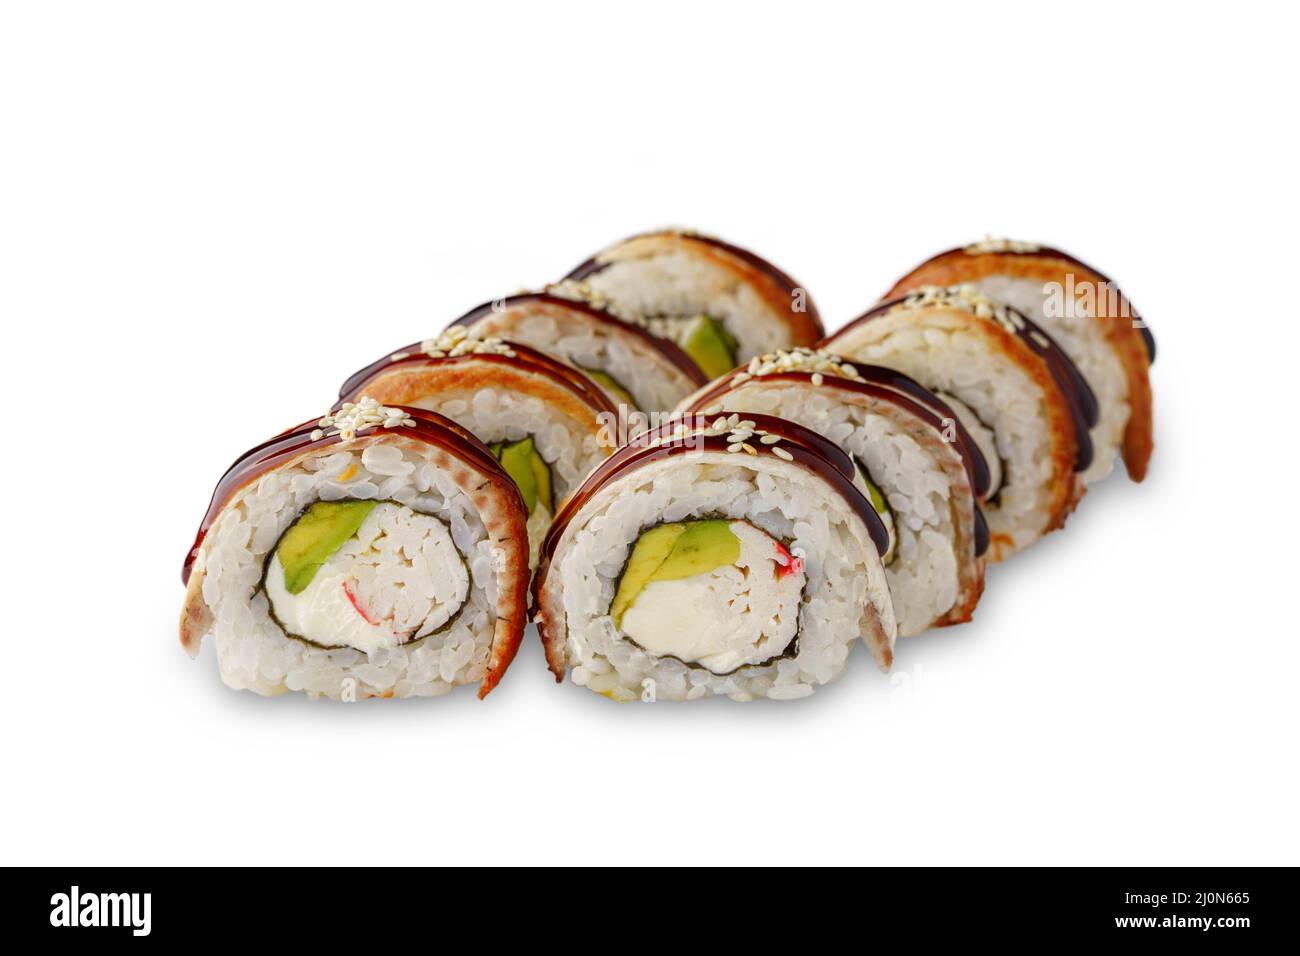 rotolo di sushi con carne di granchio, avocado, formaggio spalmabile, anguilla, salsa unagi e sesamo. Isolato su sfondo bianco Foto Stock